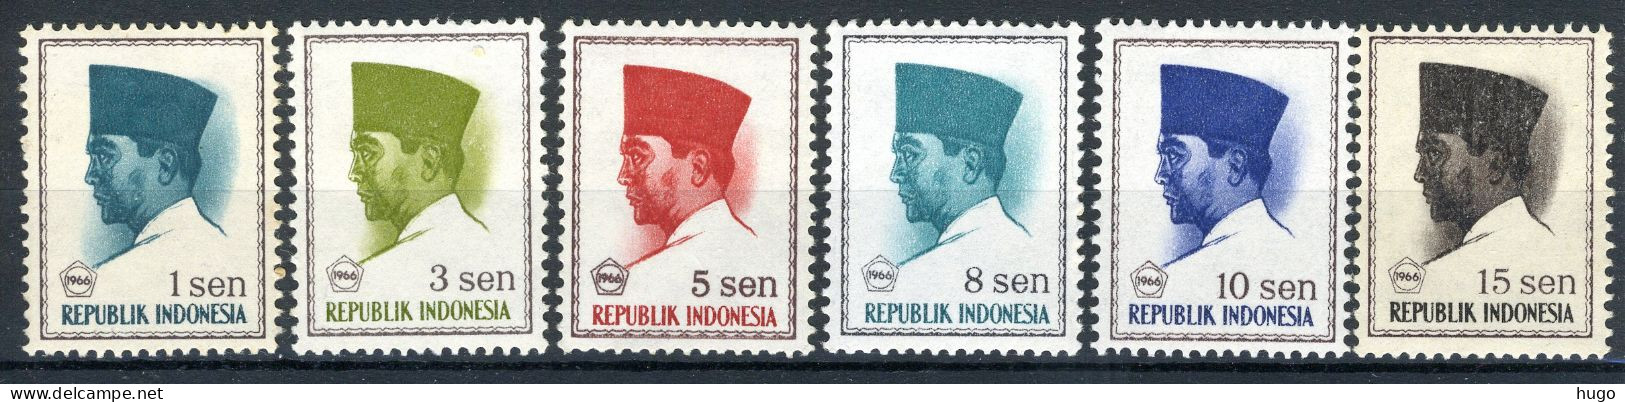 INDONESIE: ZB 516/521 MNH 1966 President Soekarno 1966 In Vijfhoek -2 - Indonesien